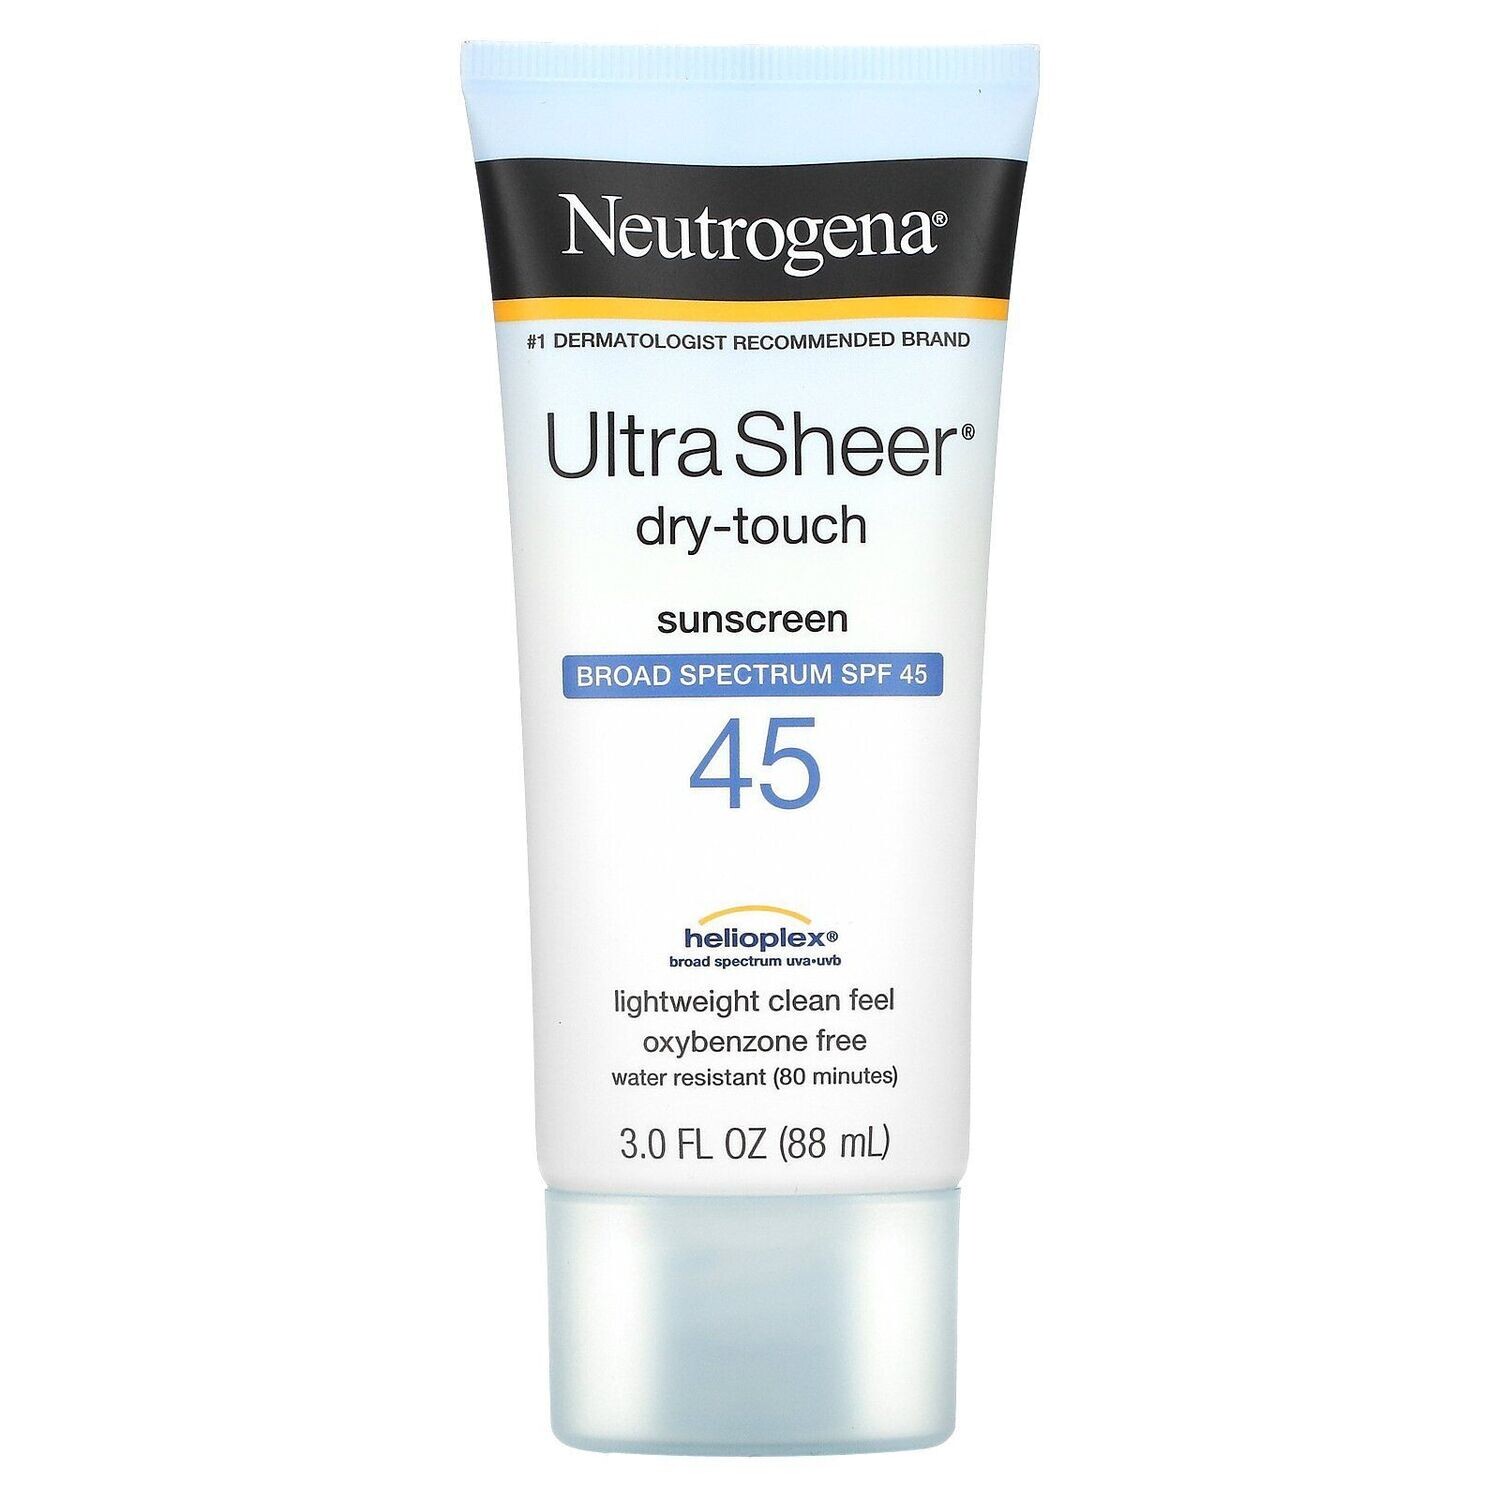 jeg lytter til musik navigation Ødelæggelse Neutrogena Ultra Sheer Dry-Touch Sunscreen SPF 45